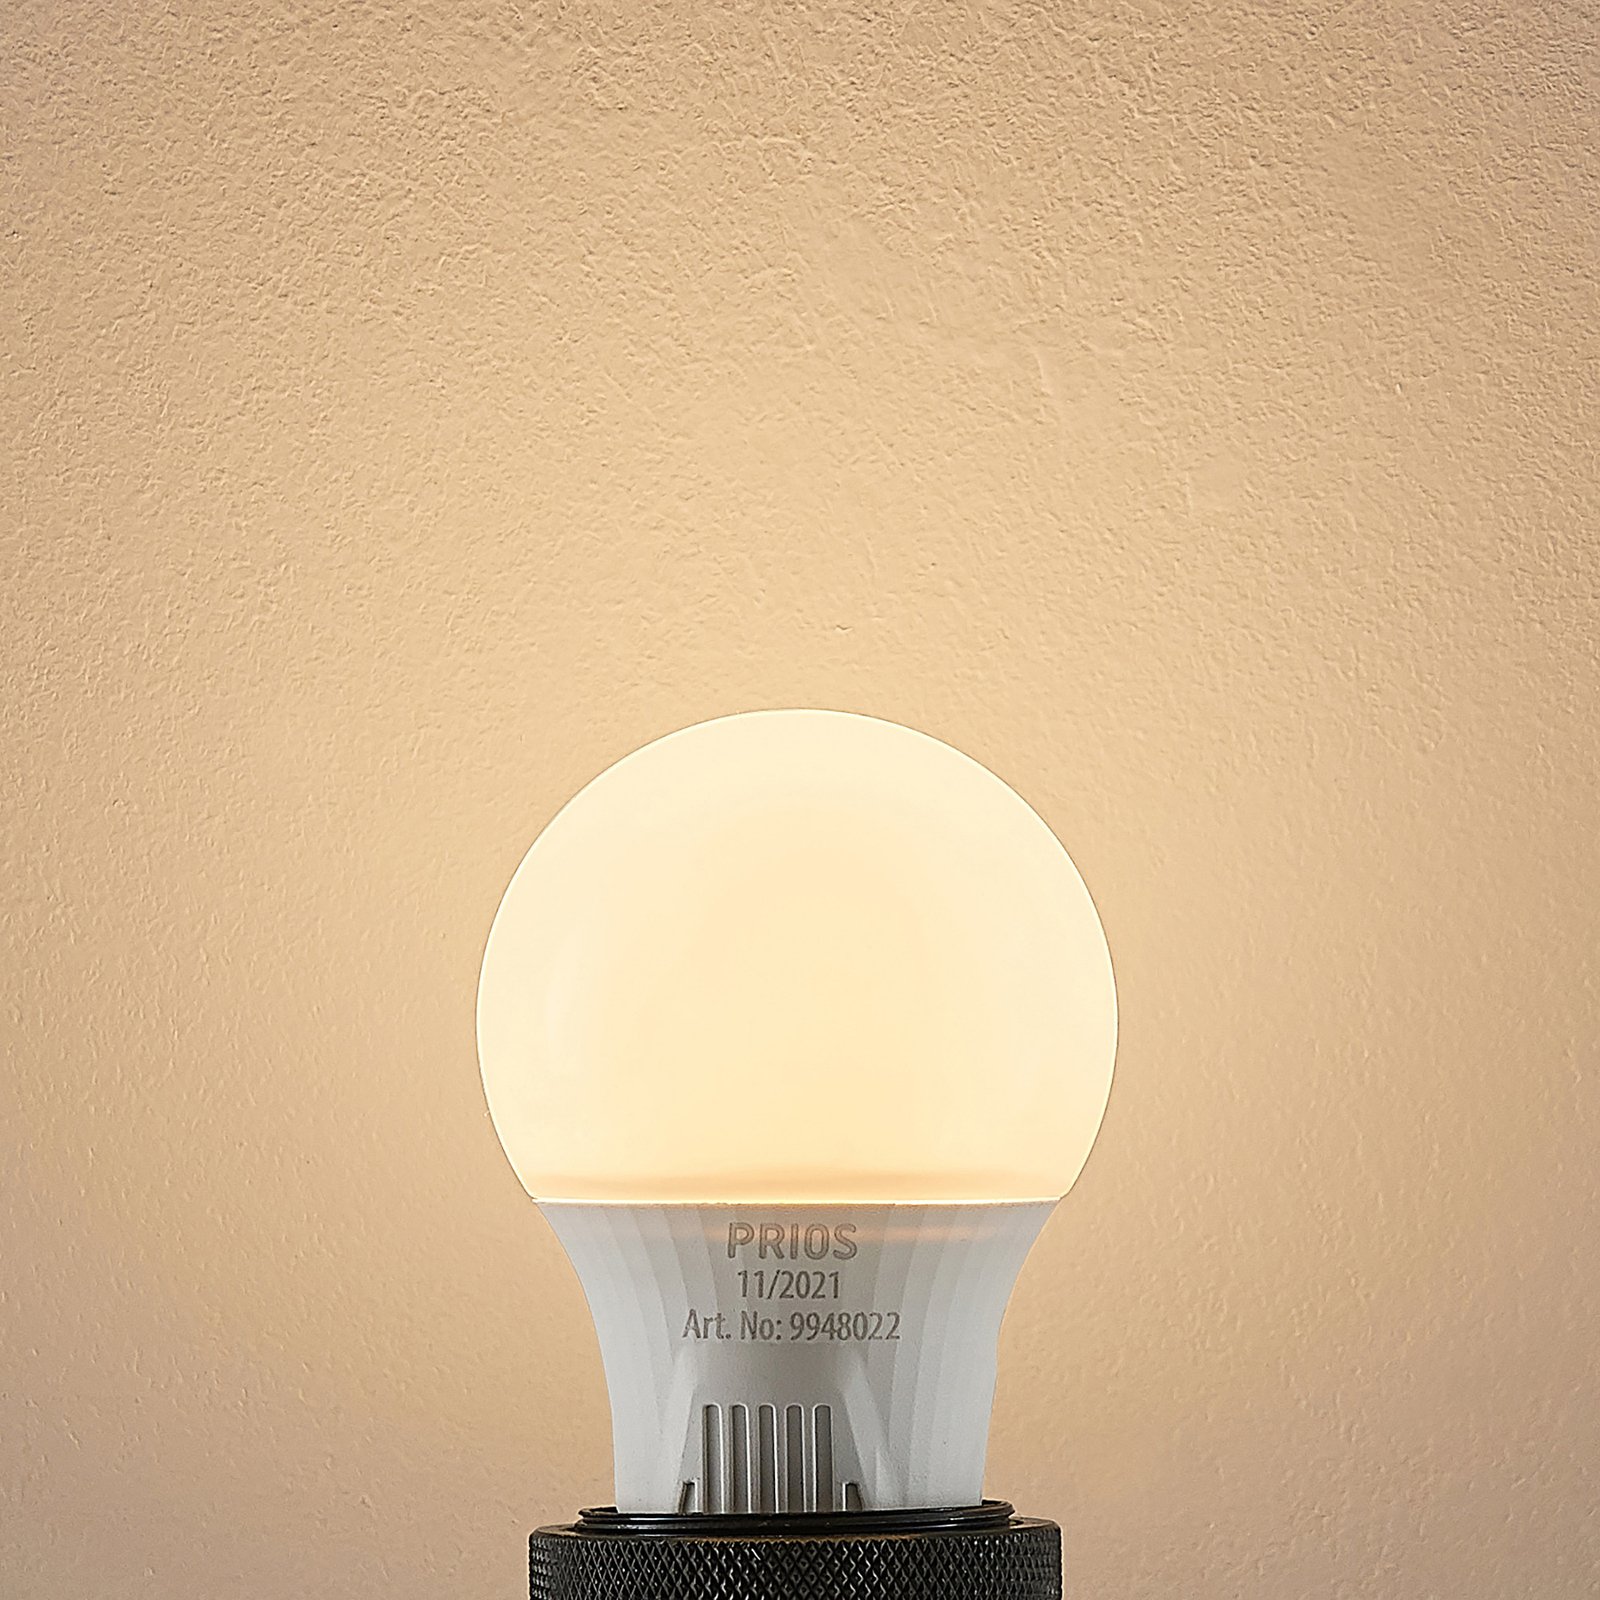 LED-Lampe E27 A60 7W weiß 3.000K 10er-Set